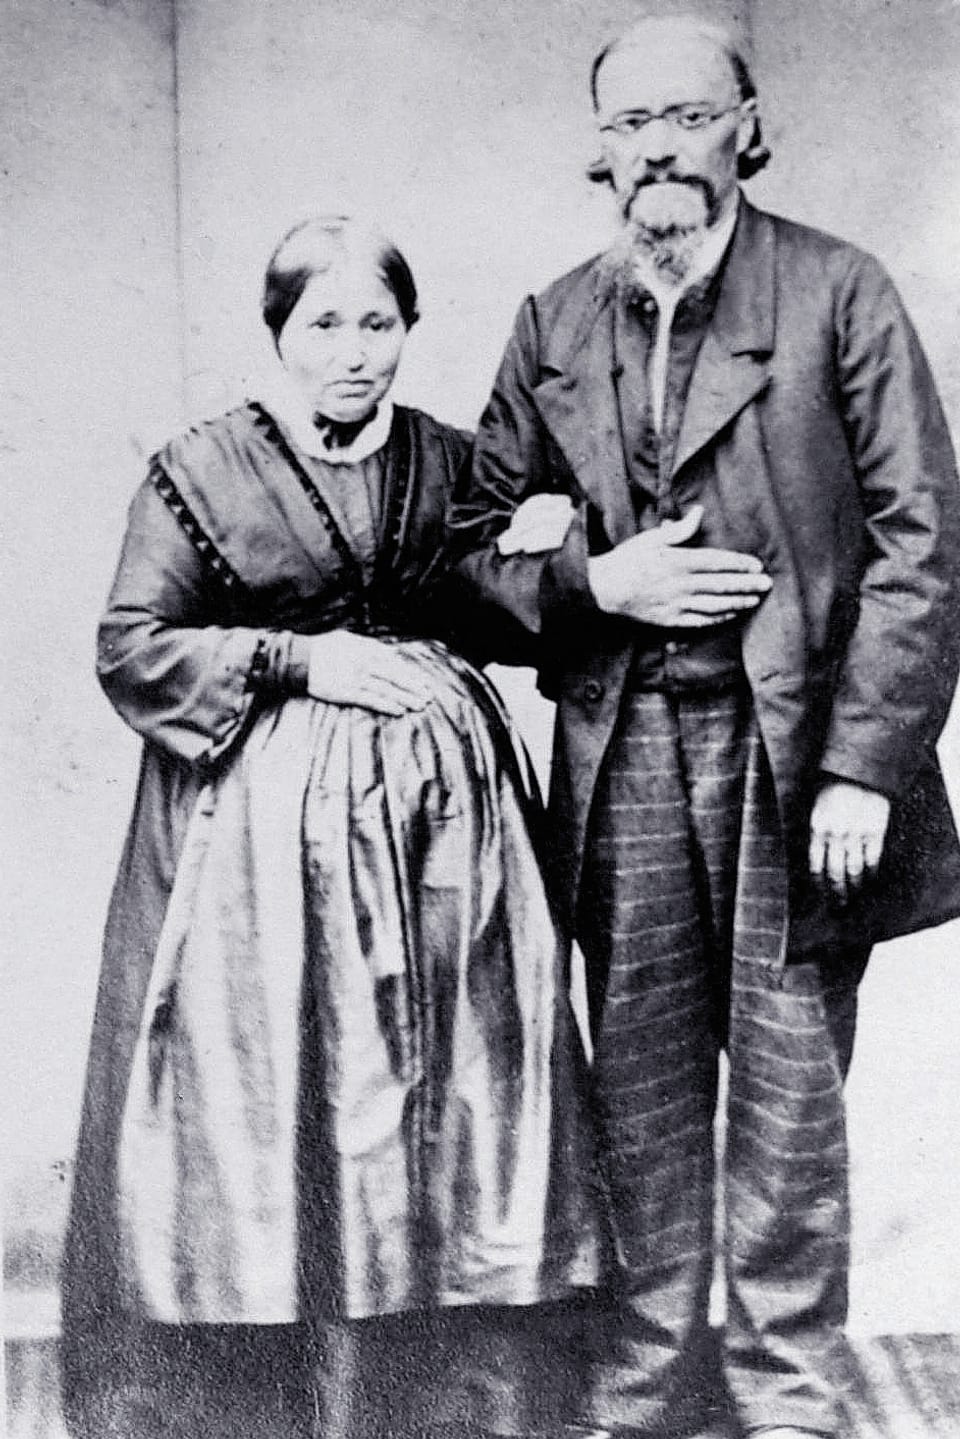 Historische Fotografie in schwarz-weiss von einem Ehepaar, das Arm in Arm vor der Kamera steht.